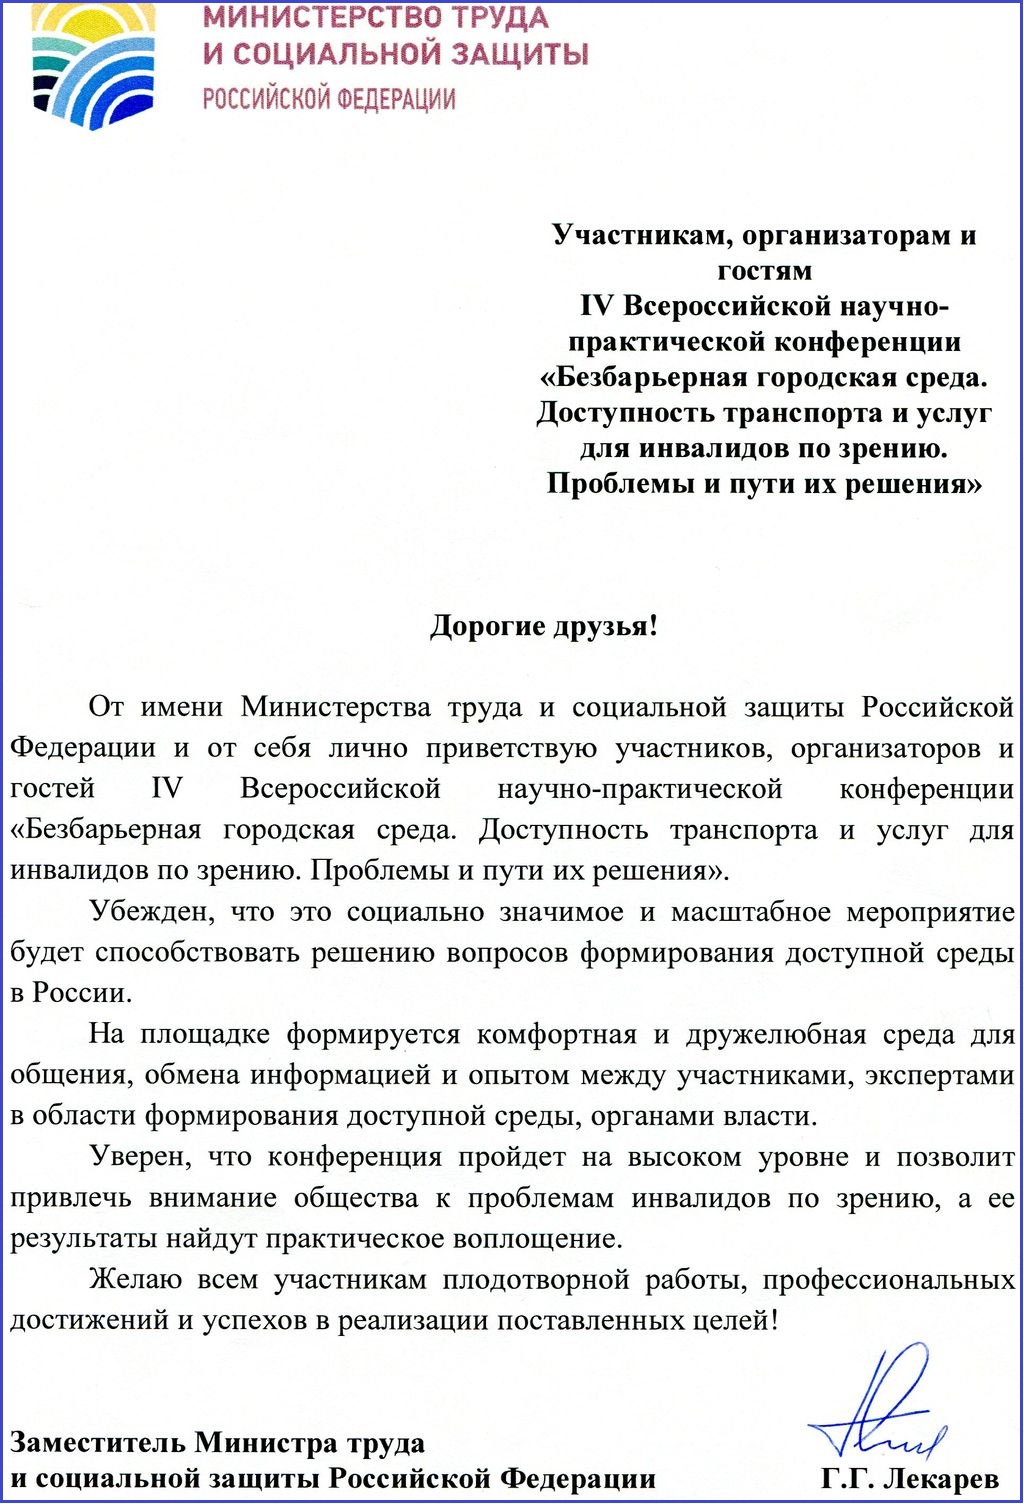 Приветственный адрес от Министра труда и социальной защиты Российской Федерации